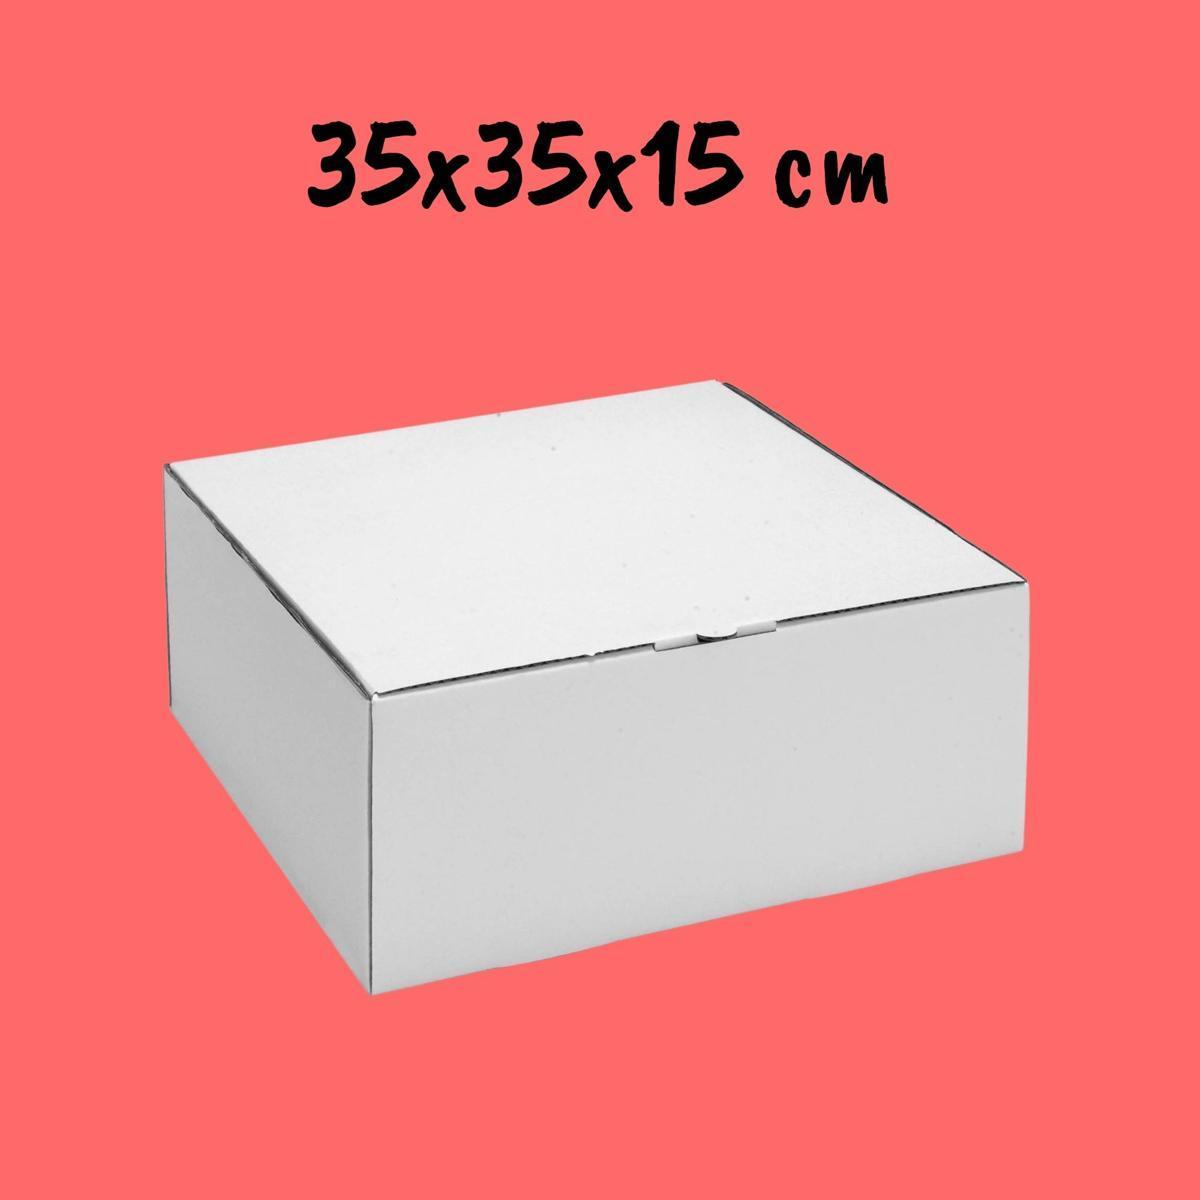 Caixa Para Bolo 35x35x15cm - Pacote com 25 unidades